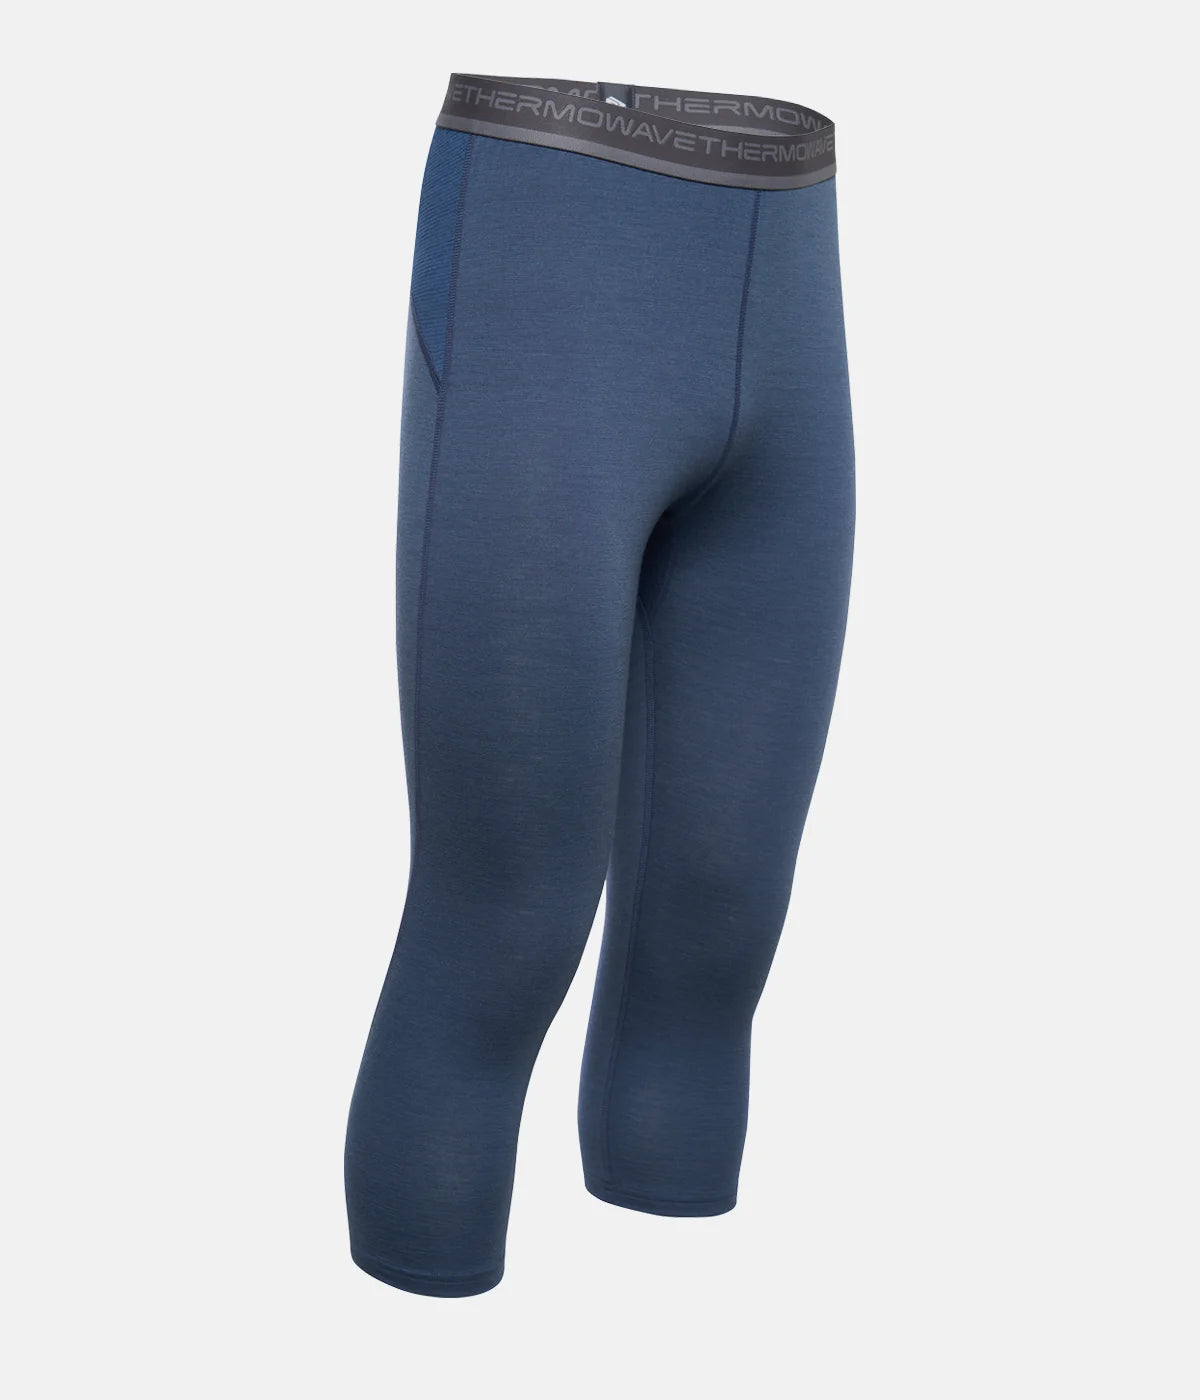 Sample: Men’s Merino Aero 3/4 Thermal Pants